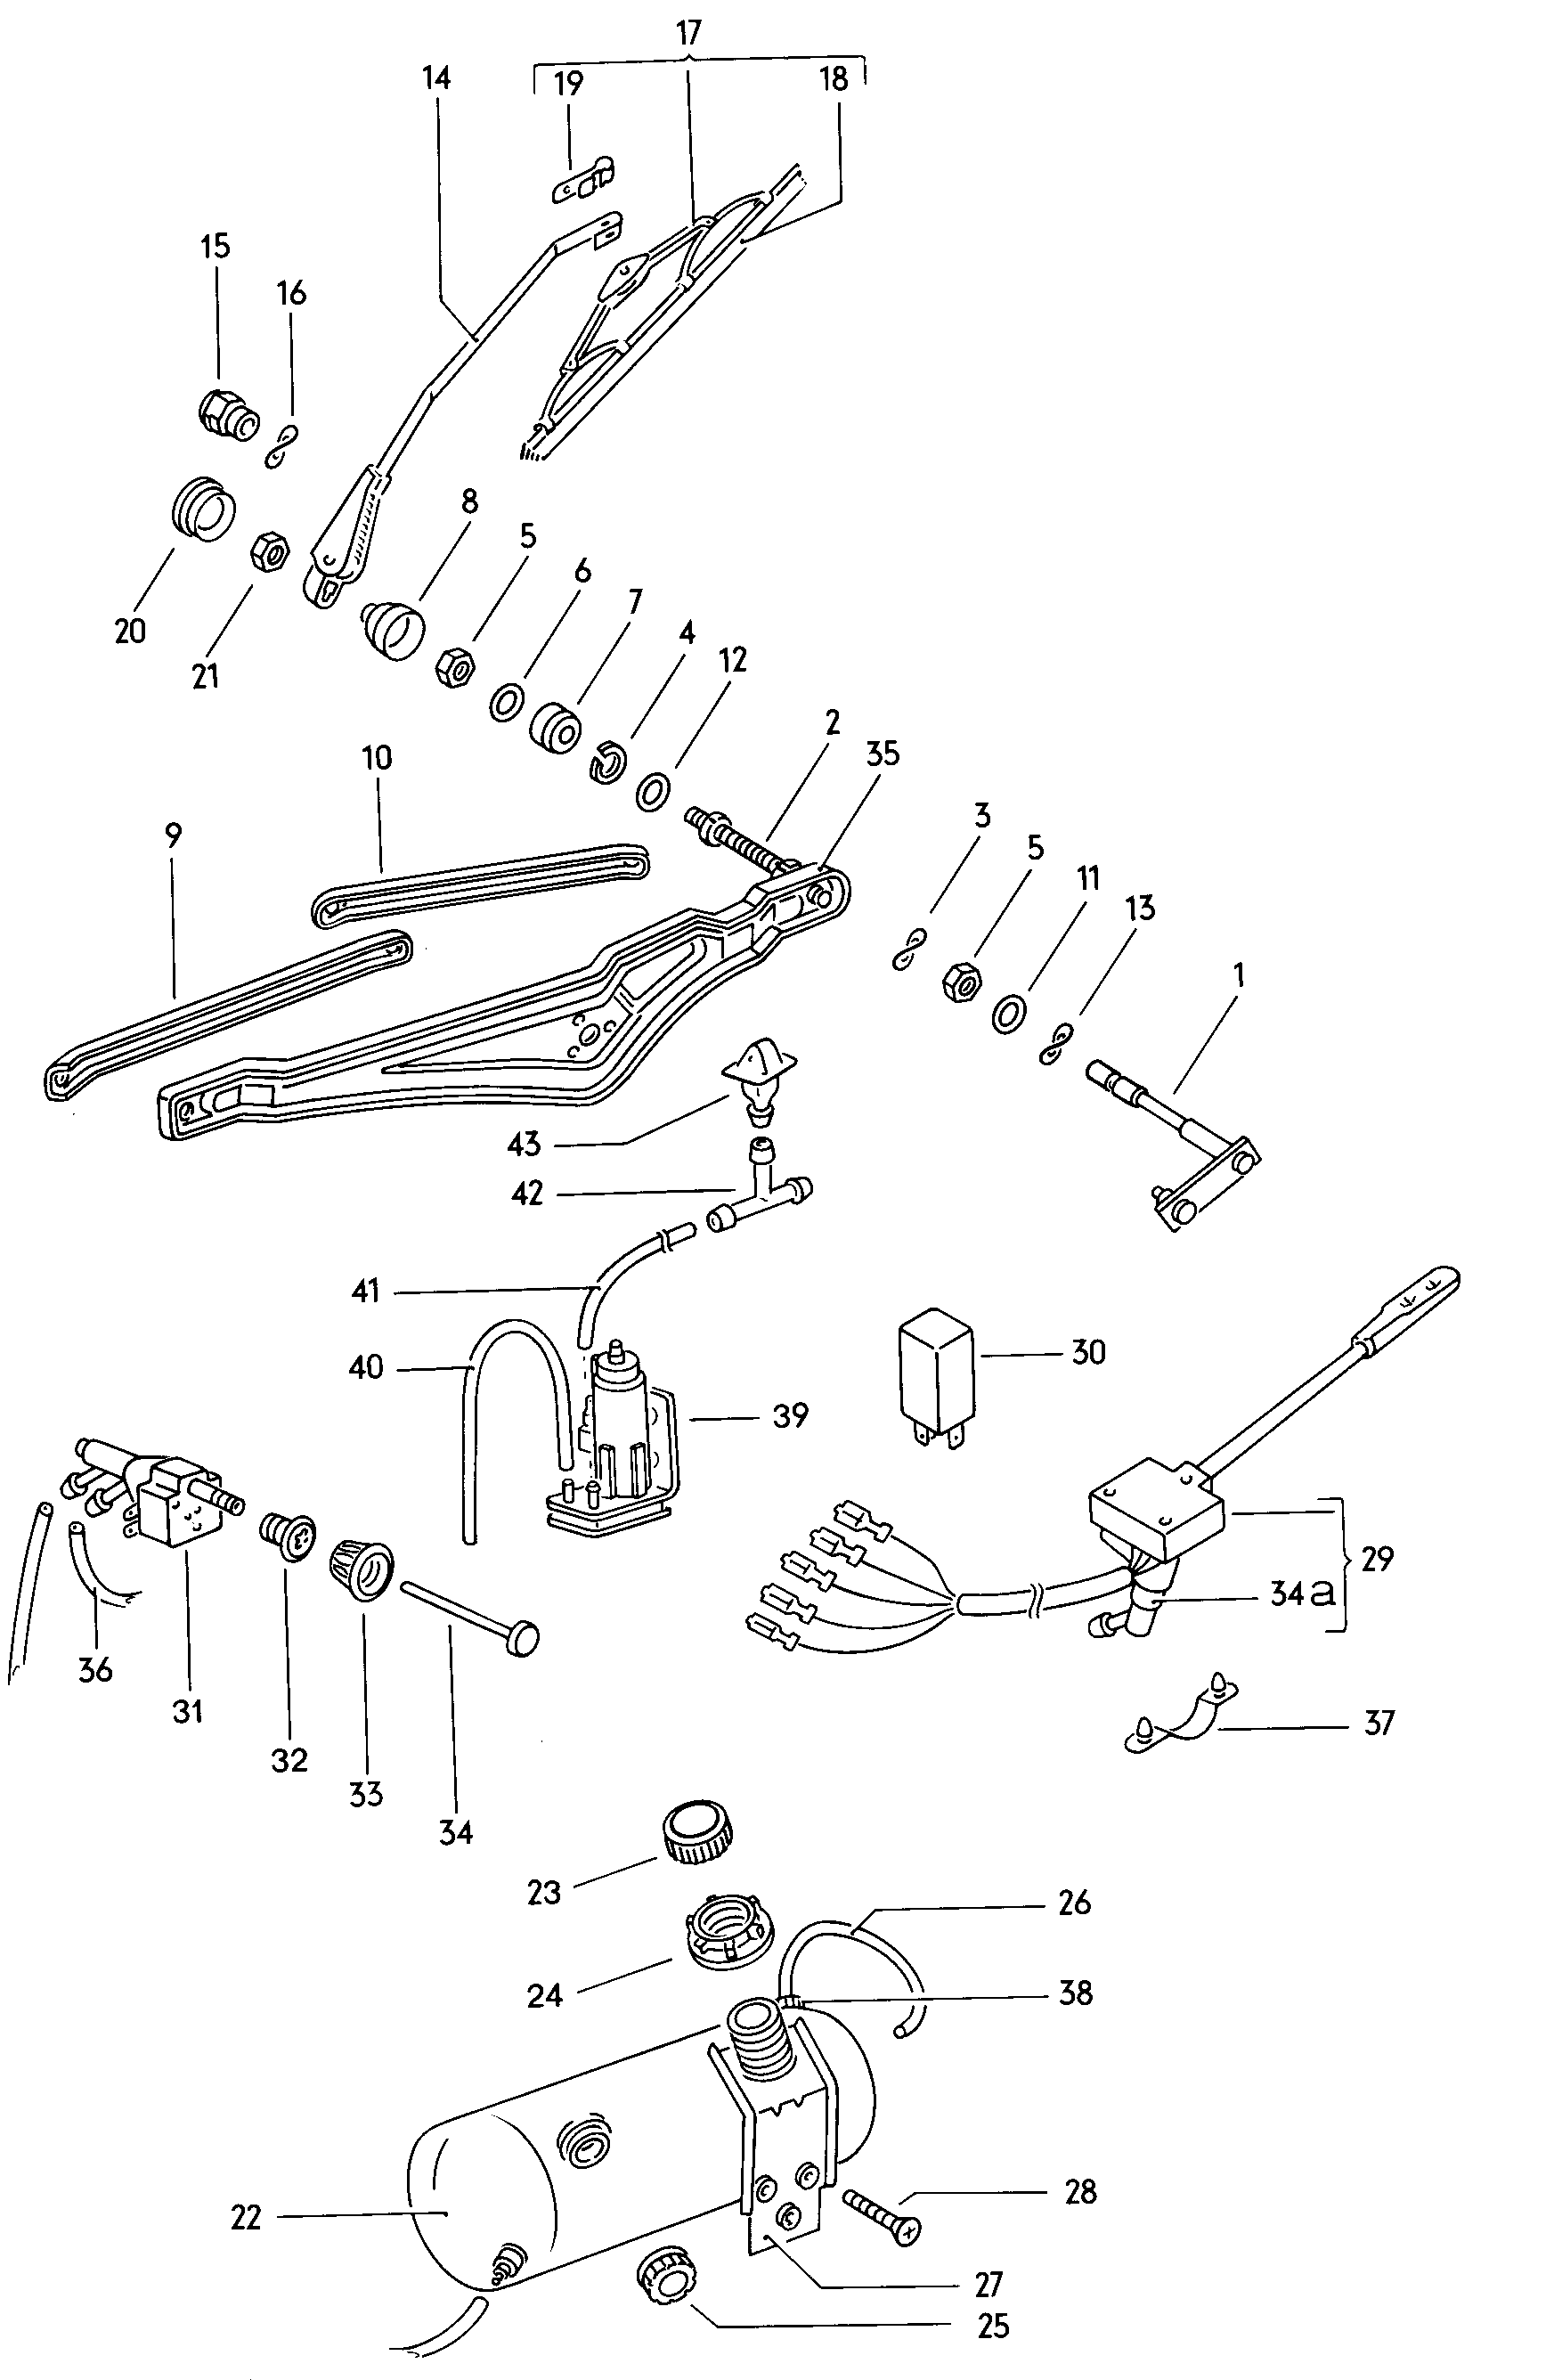 Scheibenwischer; Scheibenwaschanlage - Typ 2/syncro(T2)  